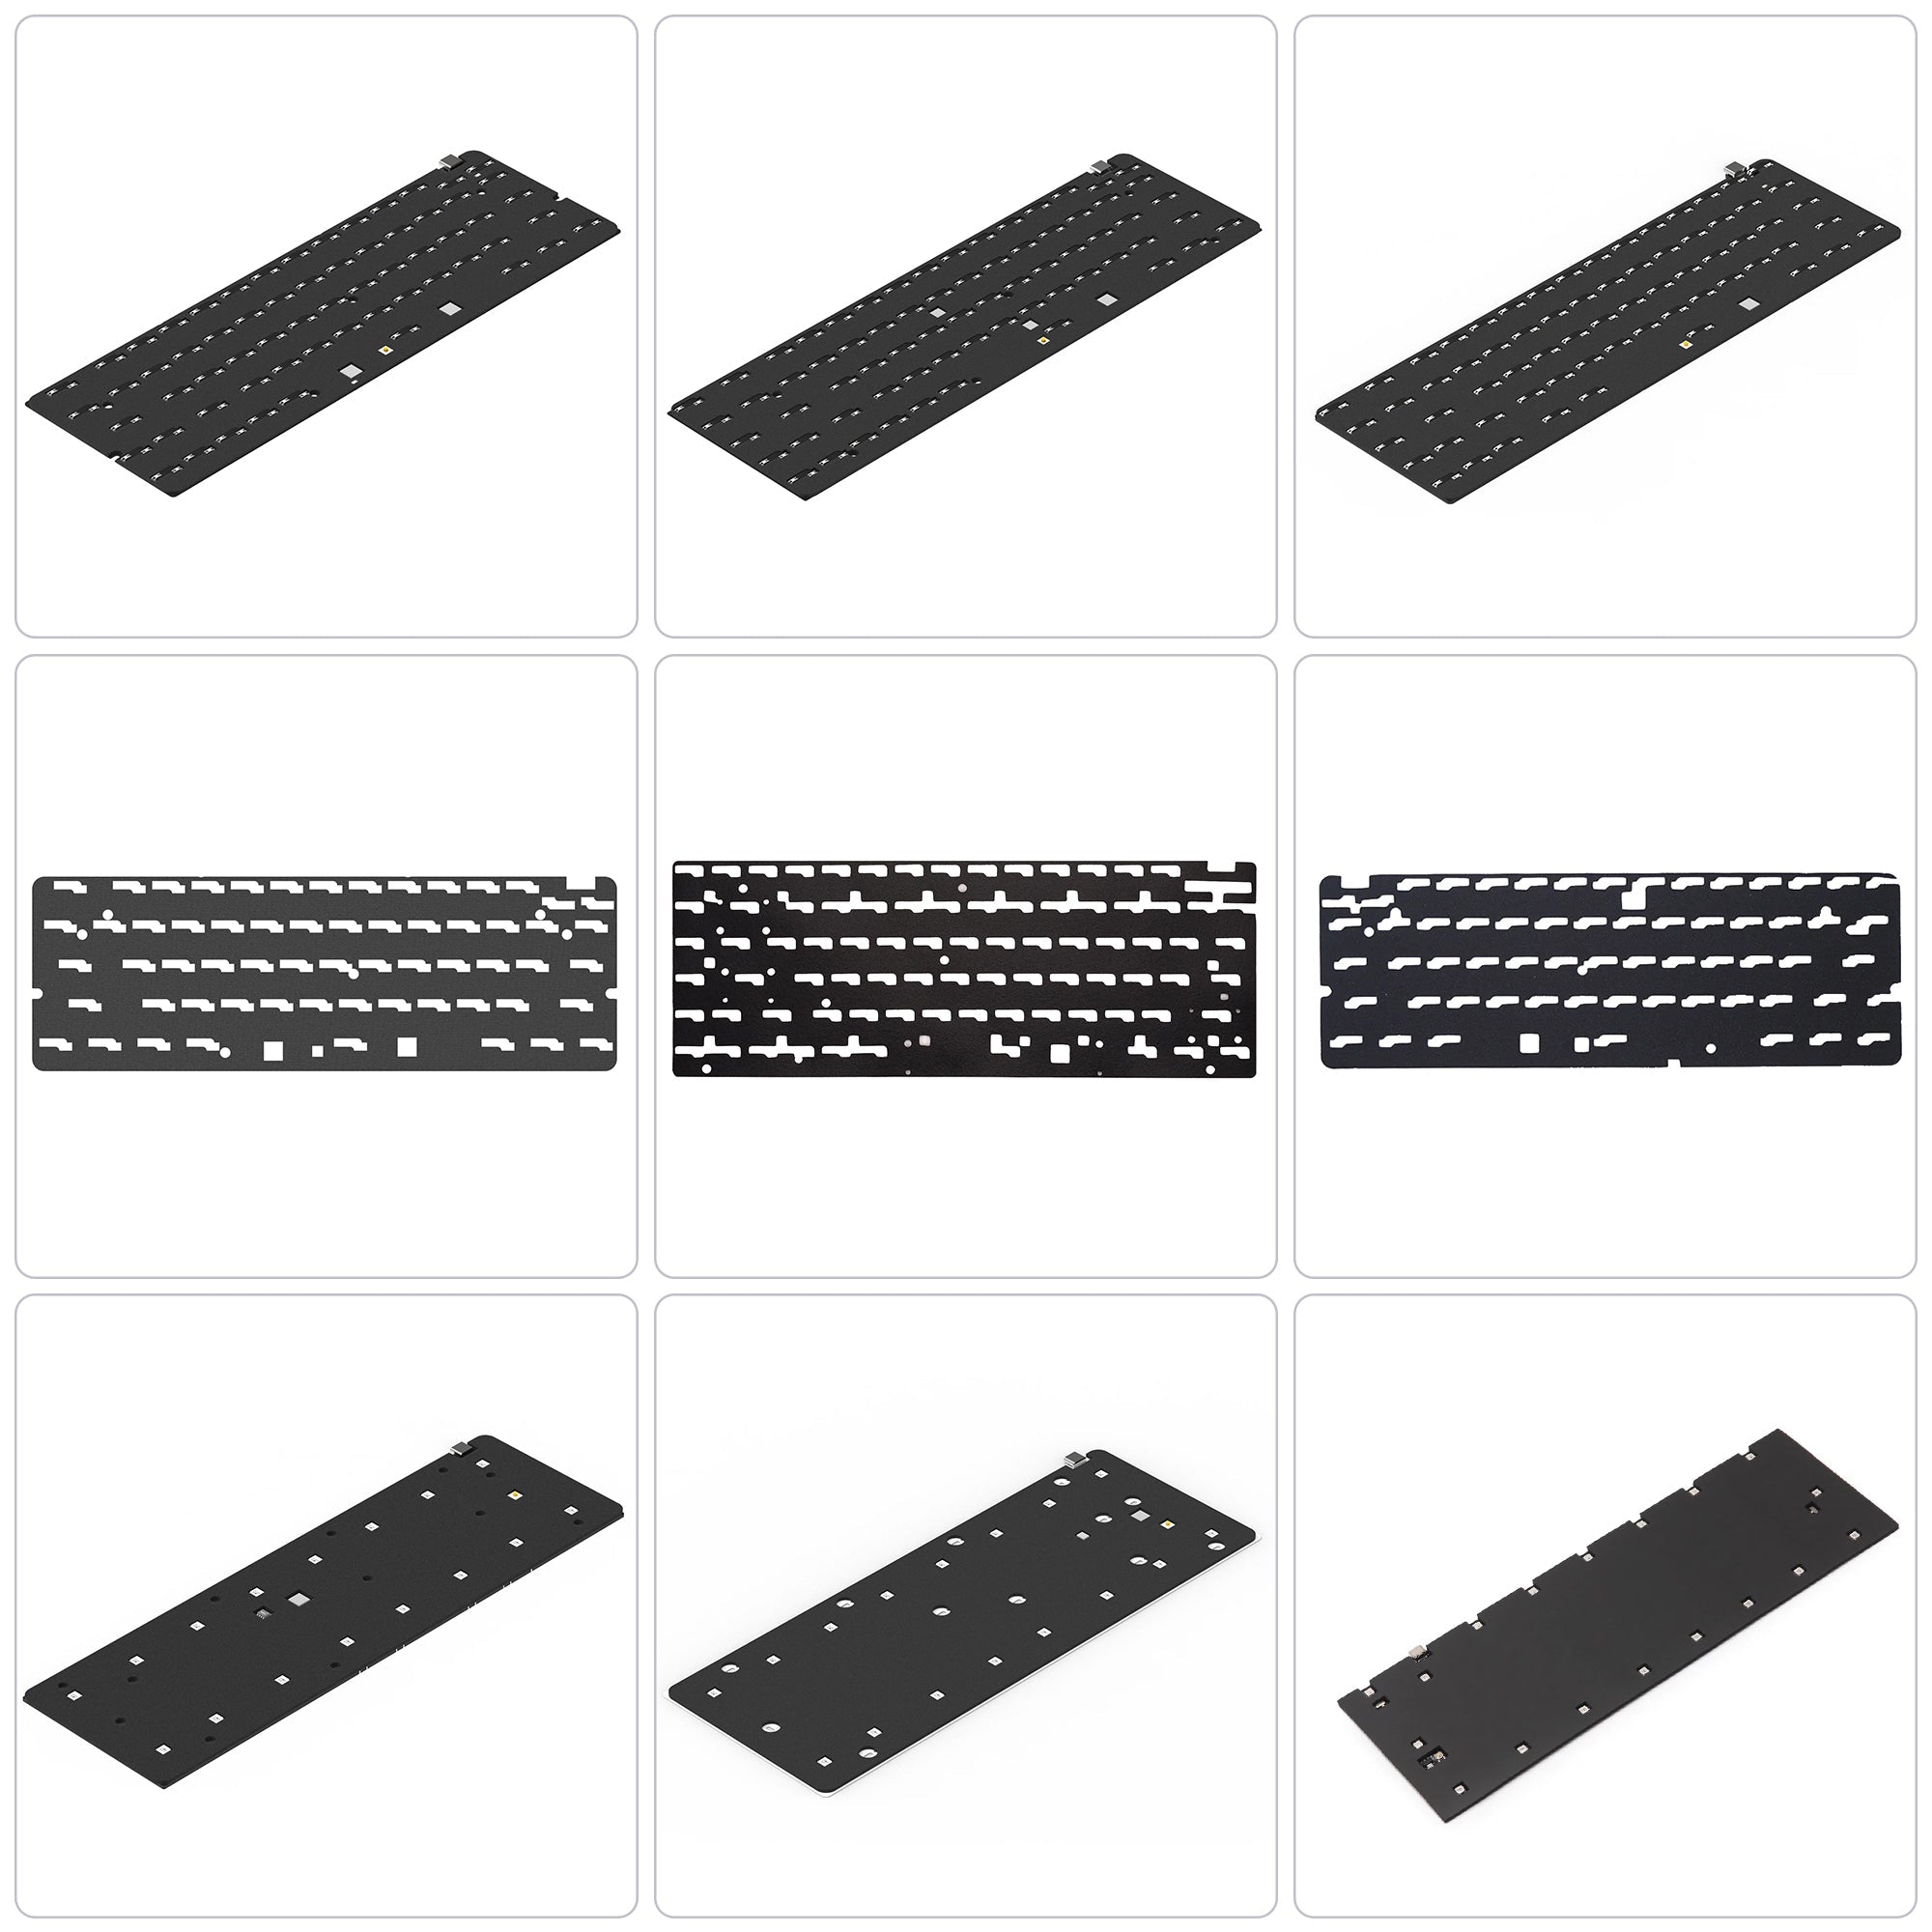 KBDfans Custom Keyboard Case Foam Collection